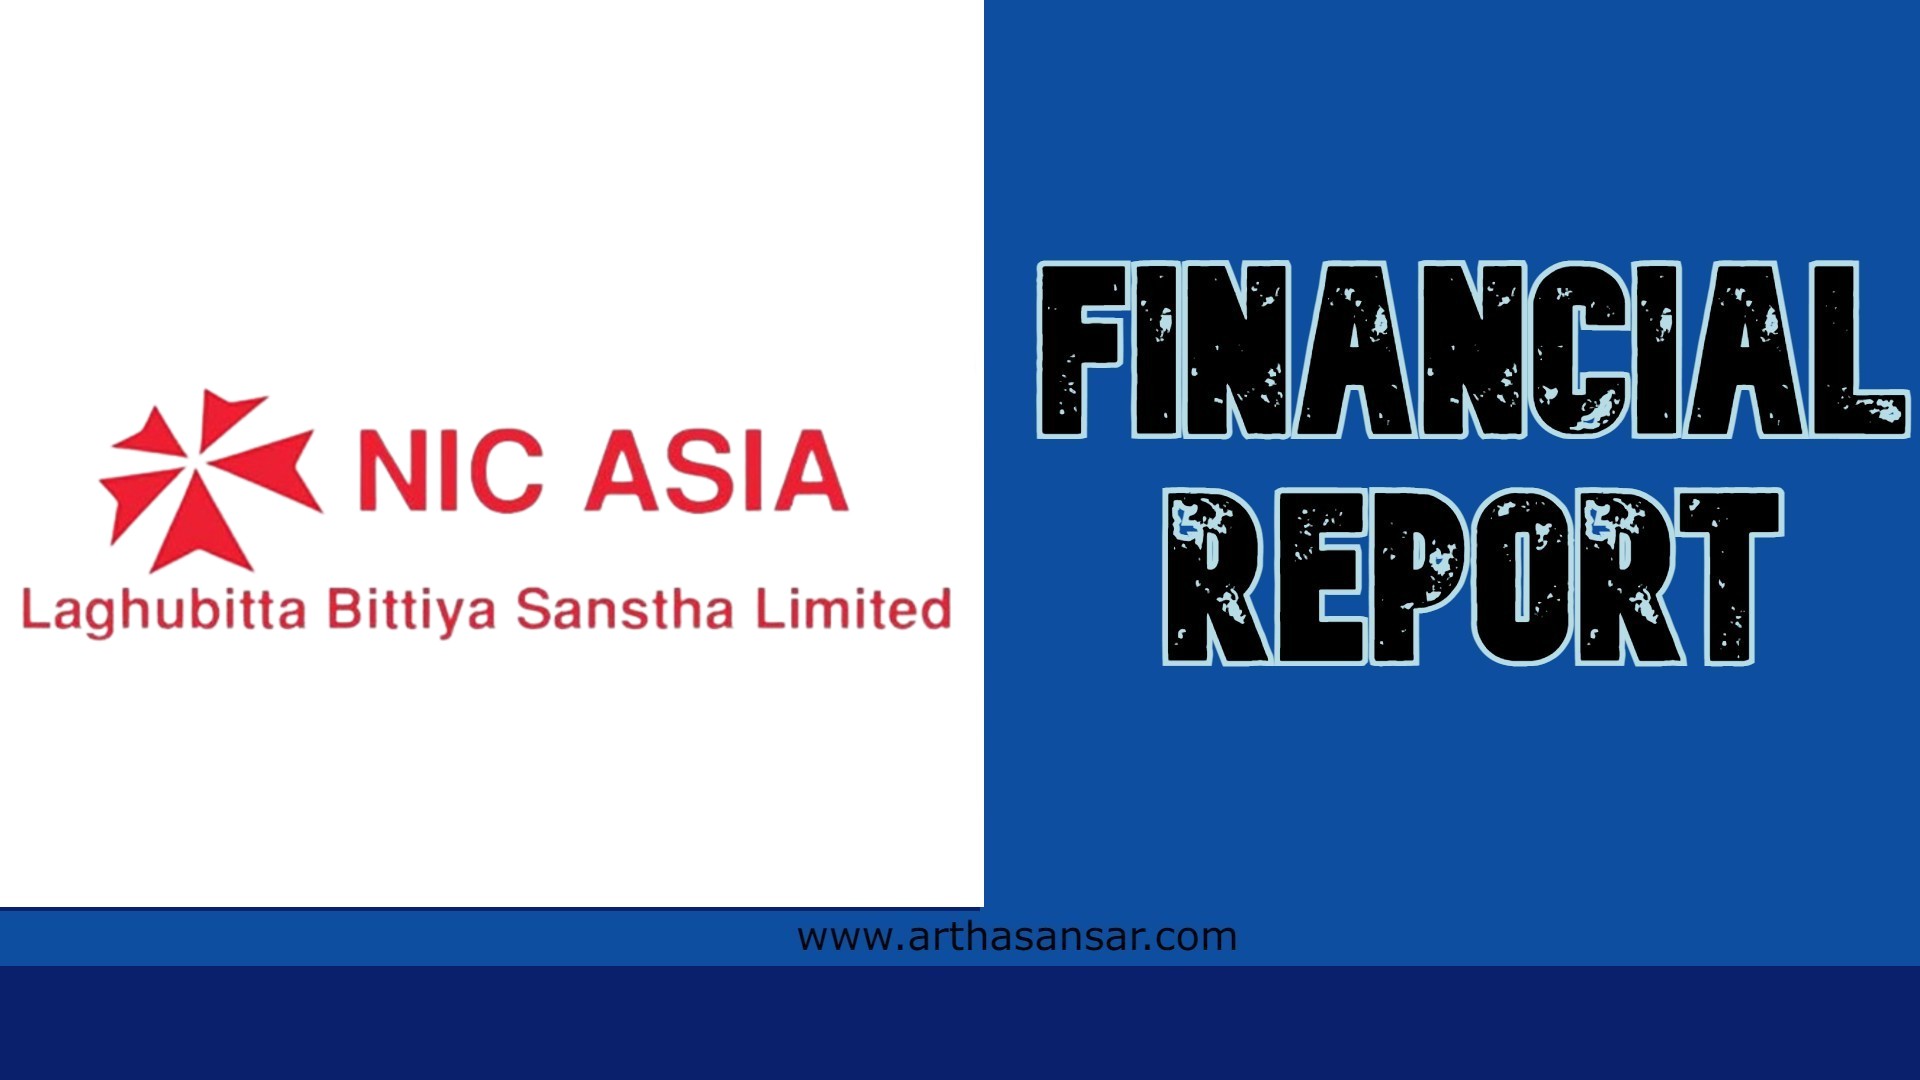 एनआईसी एशिया लघुवित्तकाे वित्तीय अपडेट : ३०.३९ प्रतिशतले घट्यो नाफा, कस्ता छन् अन्य सूचक ?